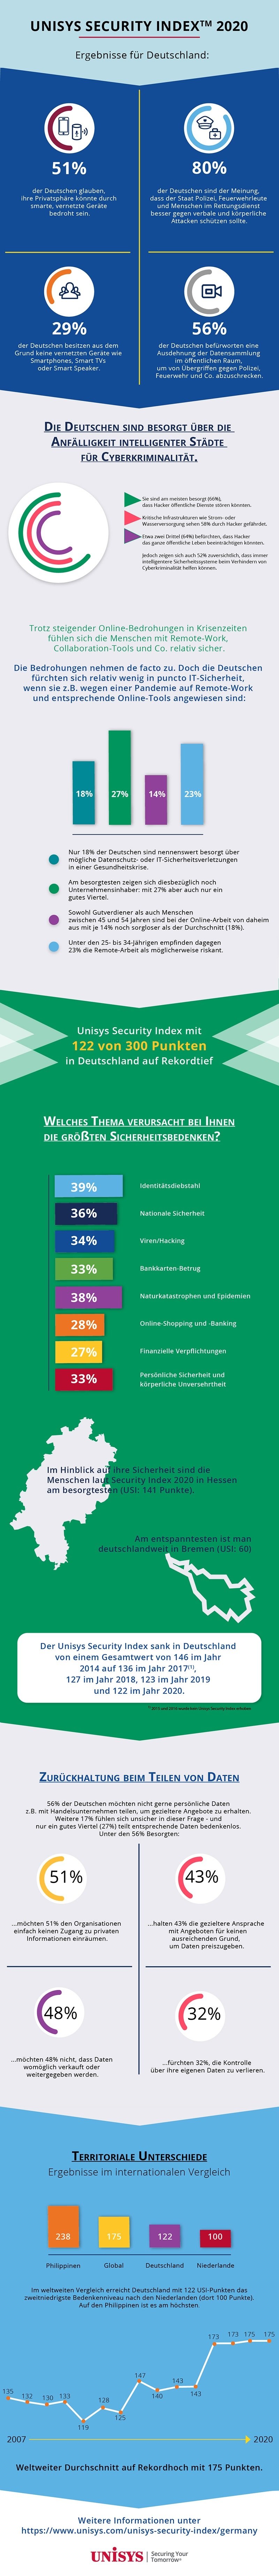 Infografik: Sicherheitsbedenken deutscher Verbraucher im Überblick